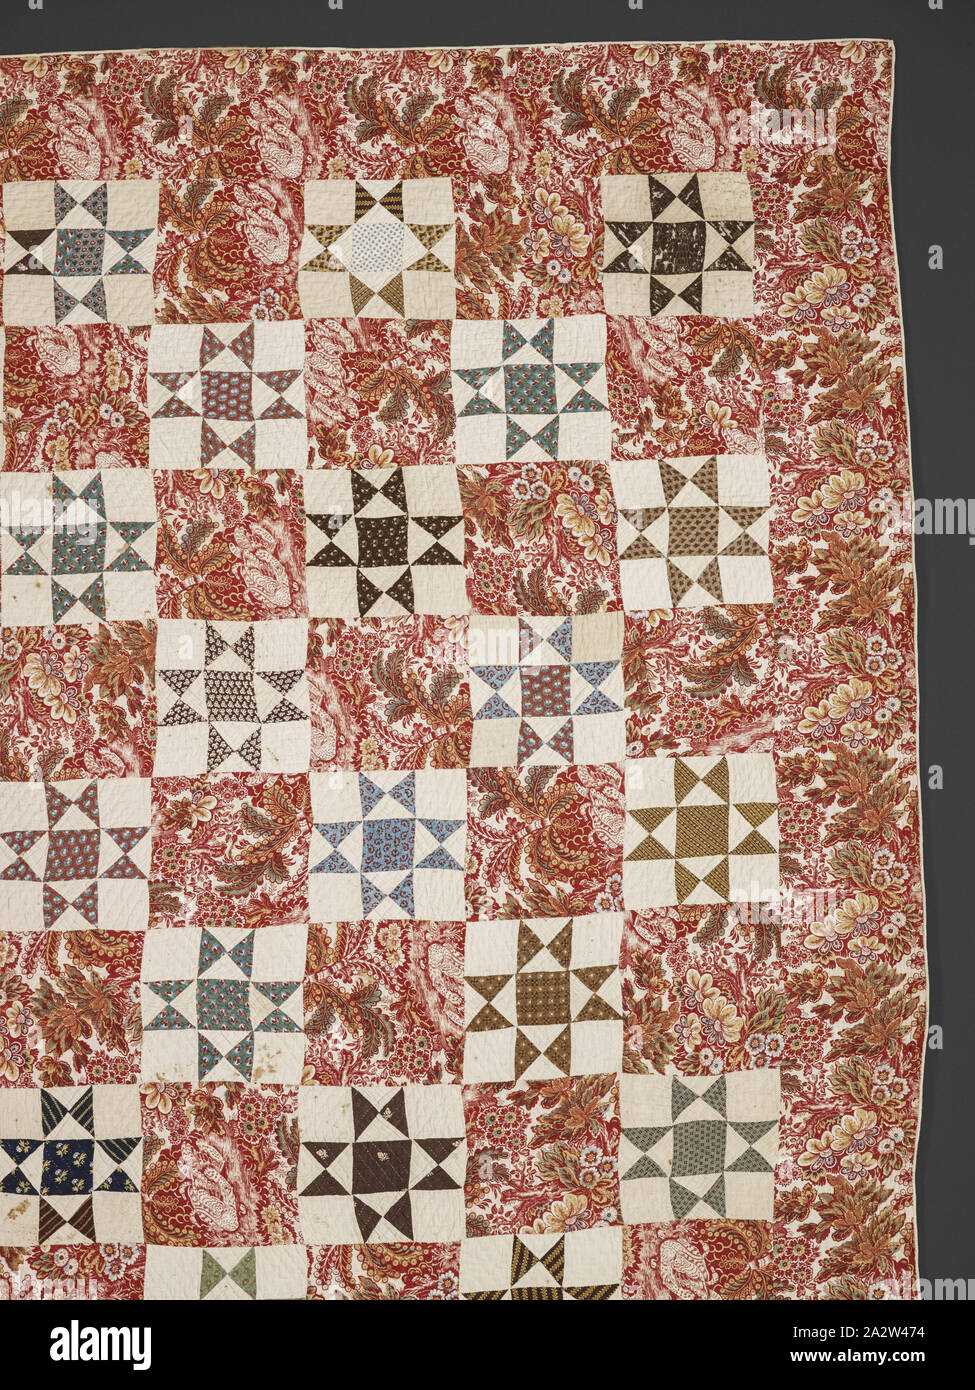 Étoile variable (courtepointe), Catherine Backinstos (américain, vers 1760-début de 1800), 1775-1783, le coton, et piqué 96-1/2 x 96 po, du textile et des arts de la mode Banque D'Images